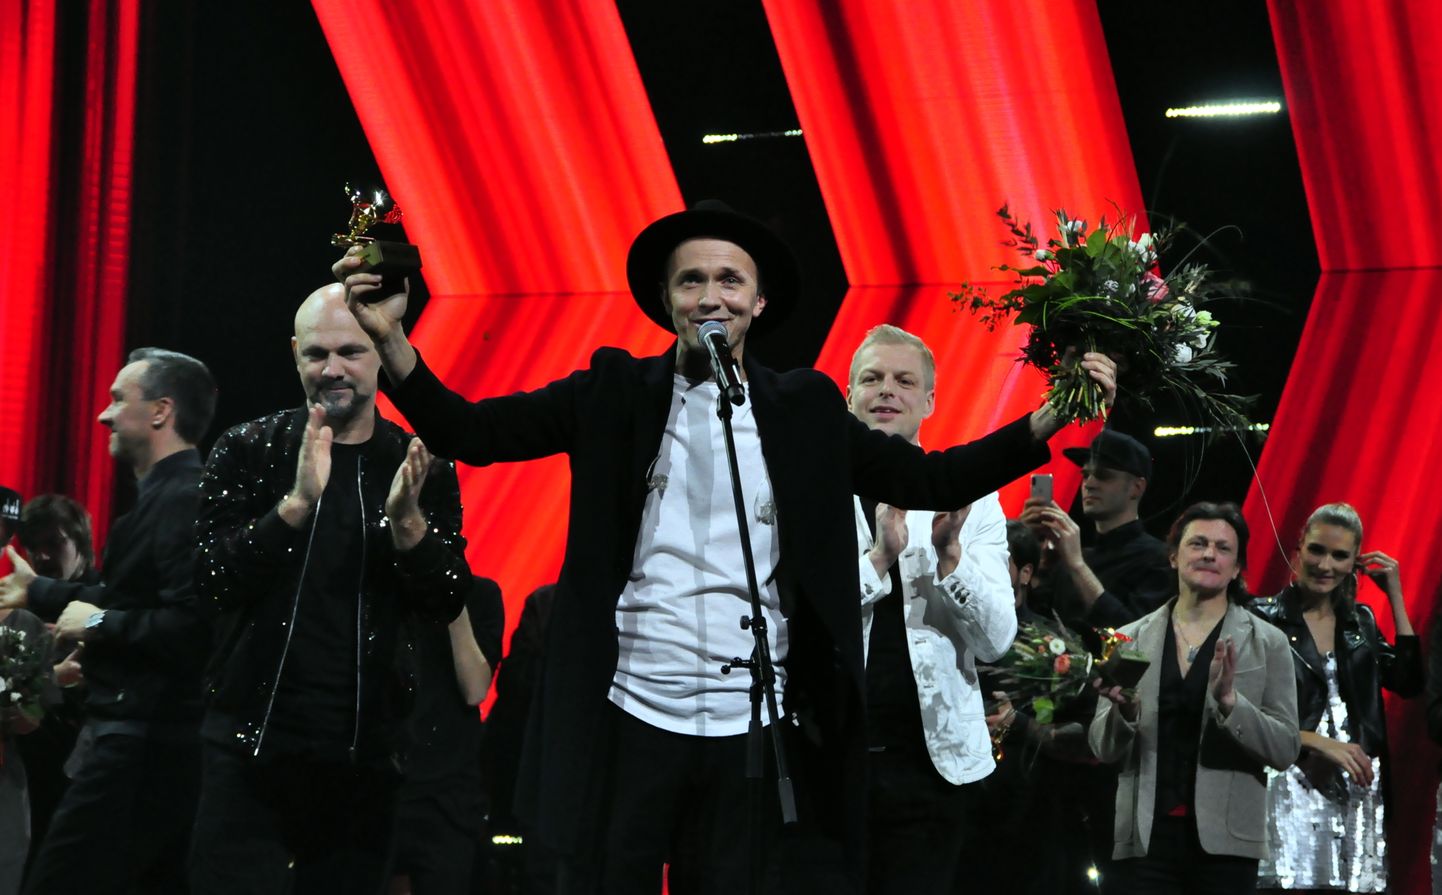 "Latvijas Radio 2" gada vērtīgākās dziesmas "Muzikālā banka 2018" uzvarētāji - grupa "Prāta vētras" un solists Renārs Kaupers noslēguma ceremonijas laikā Daugavpilī.